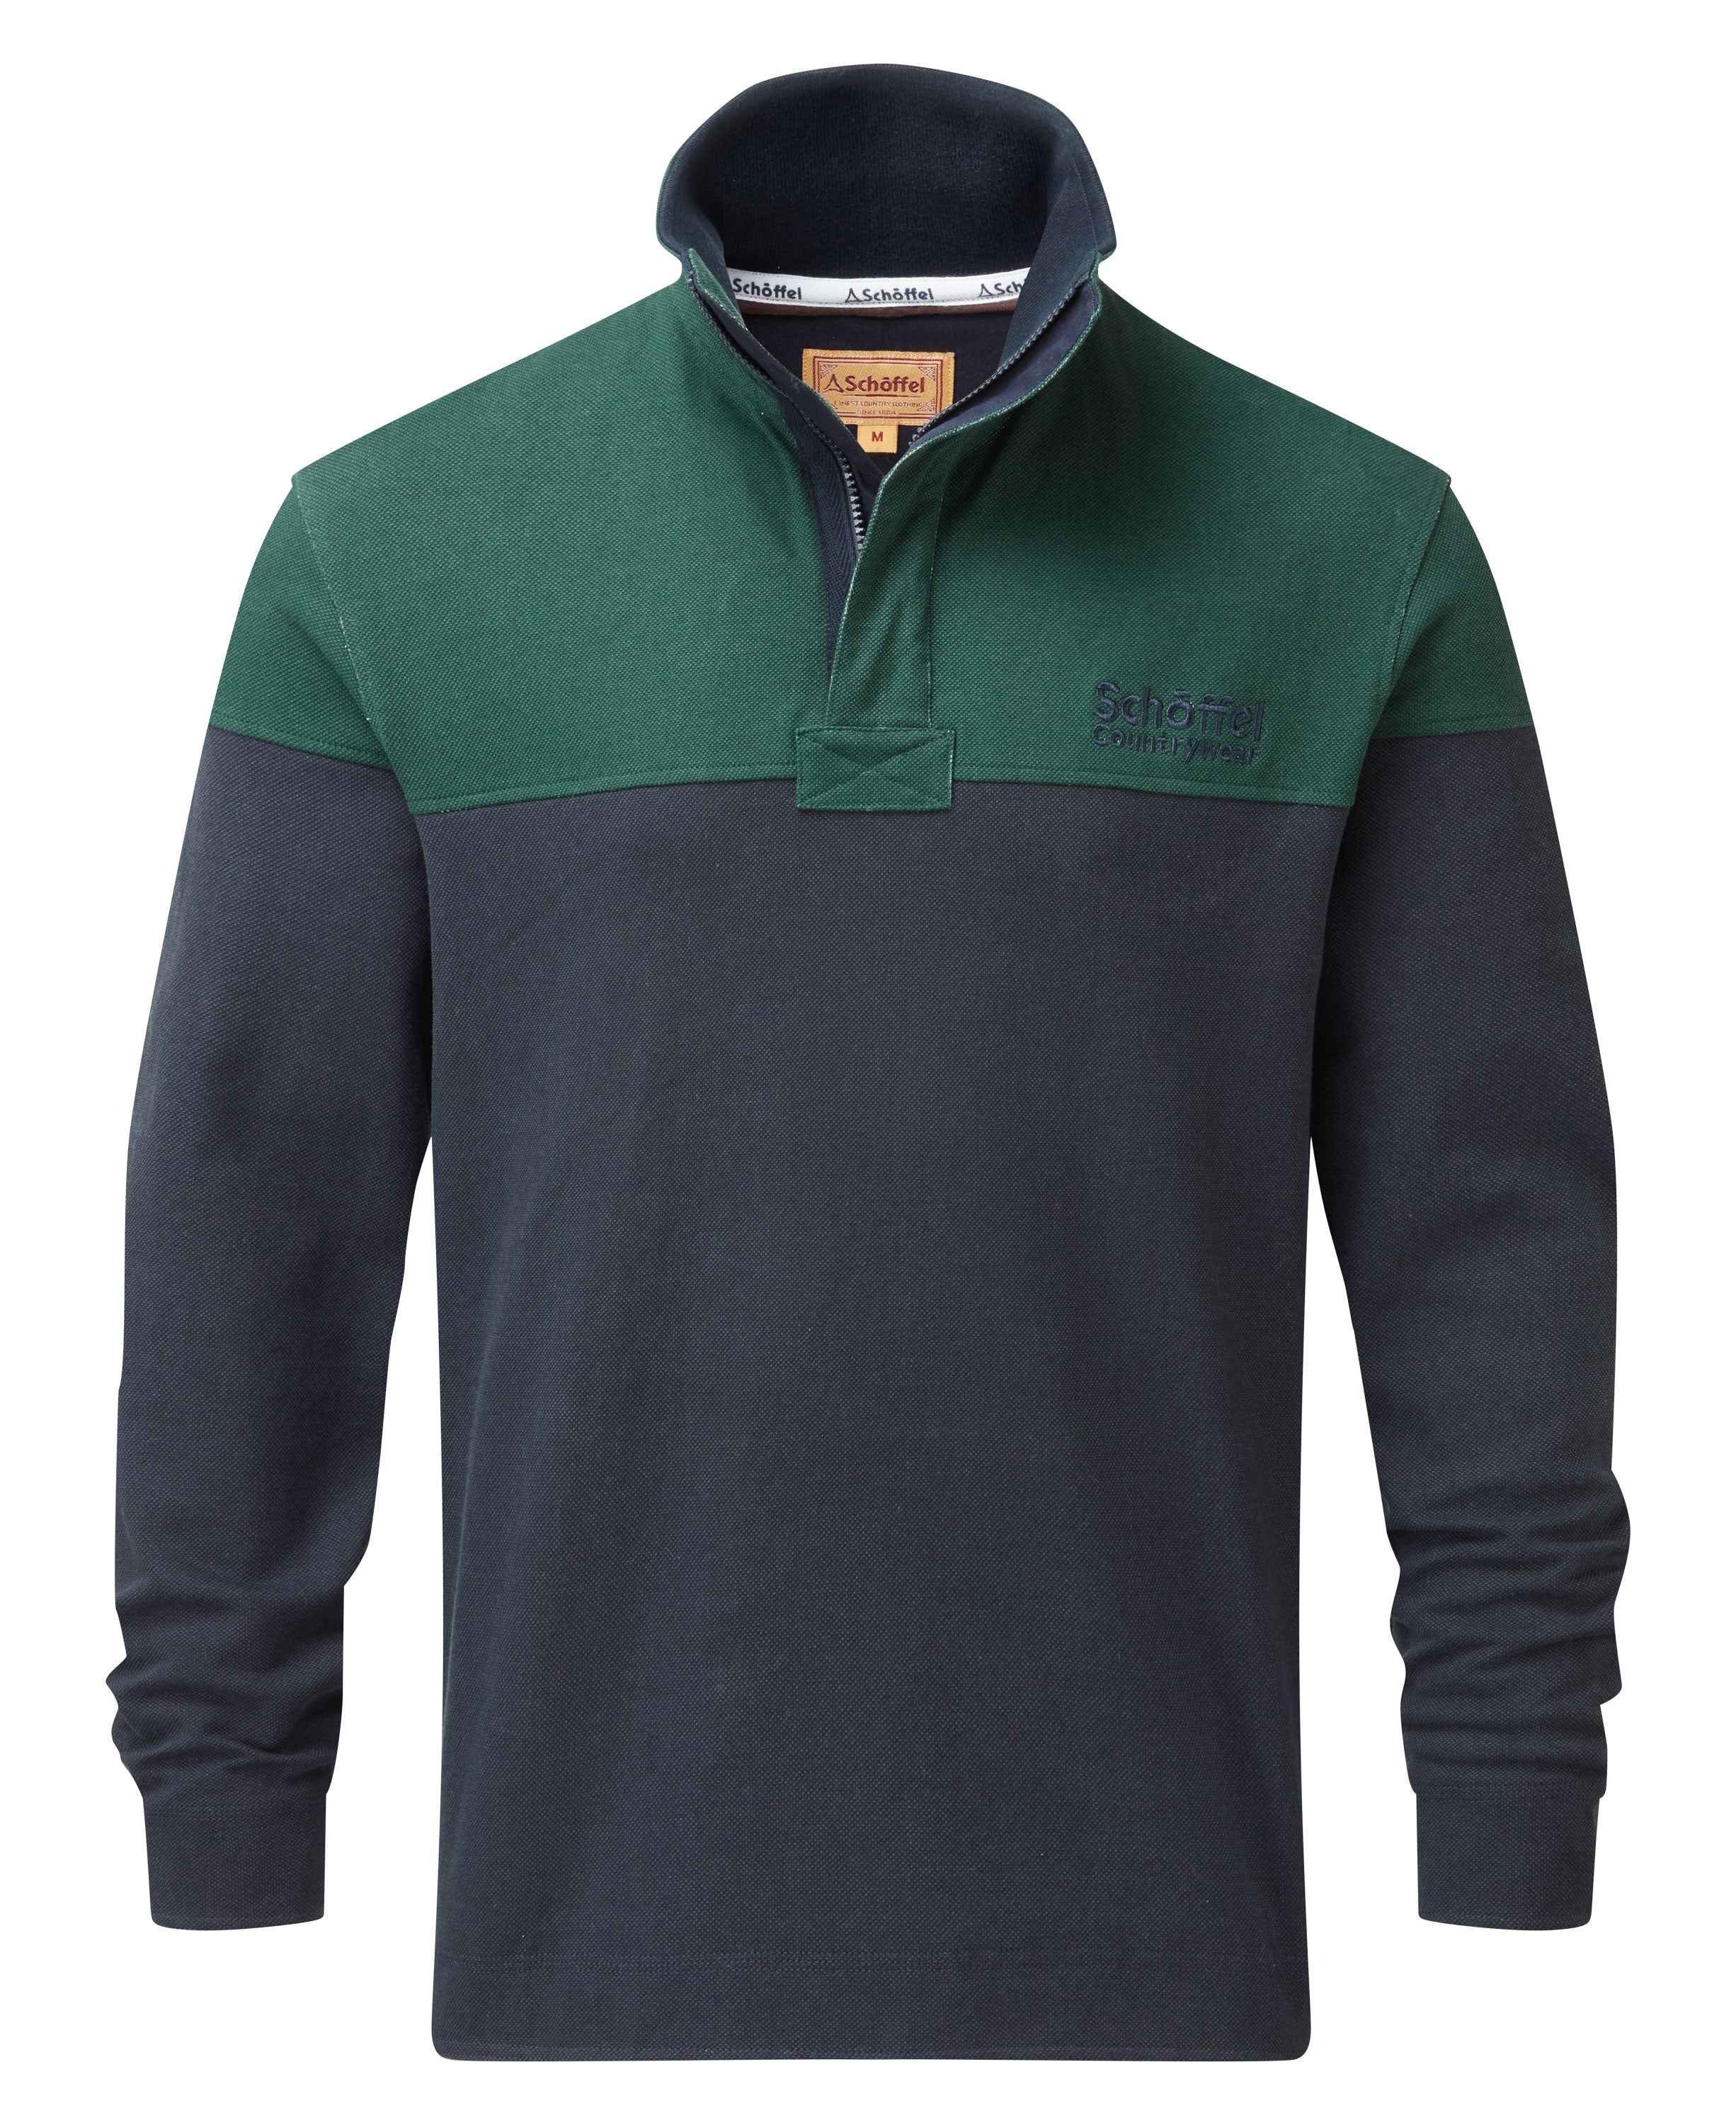 Helford Heritage Sweatshirt - Navy/Pine Green